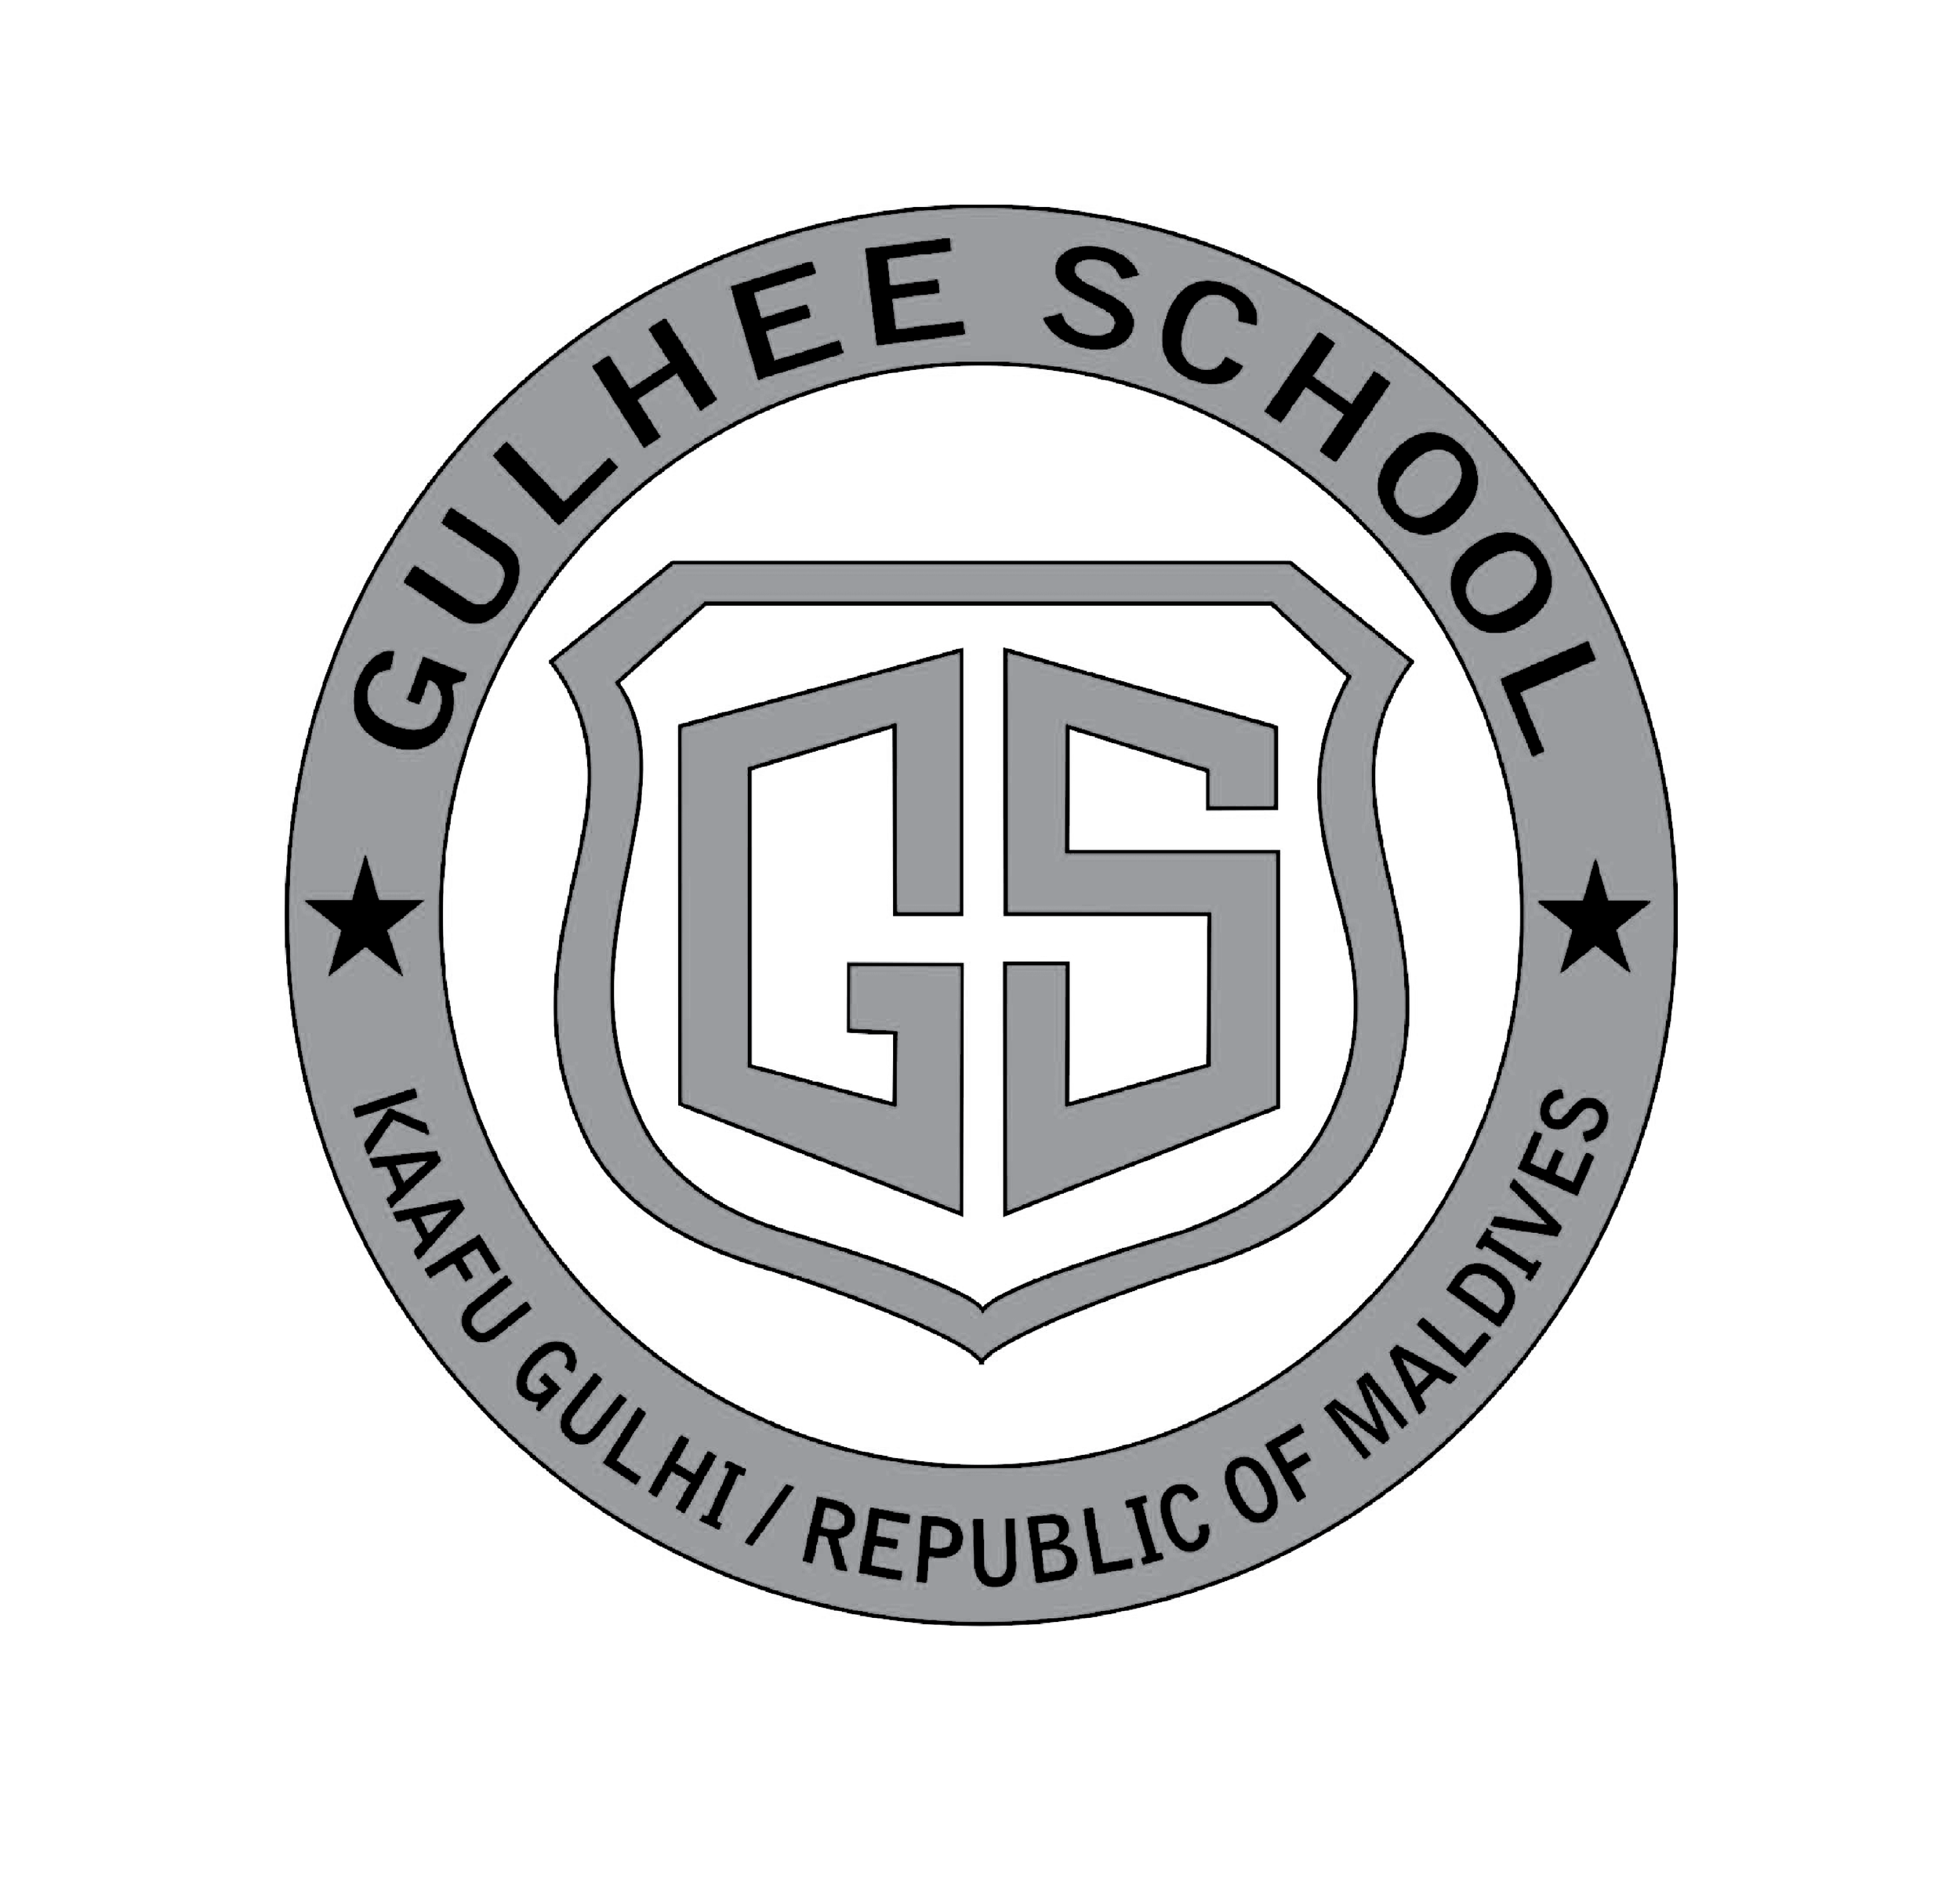 K. Gulhee School